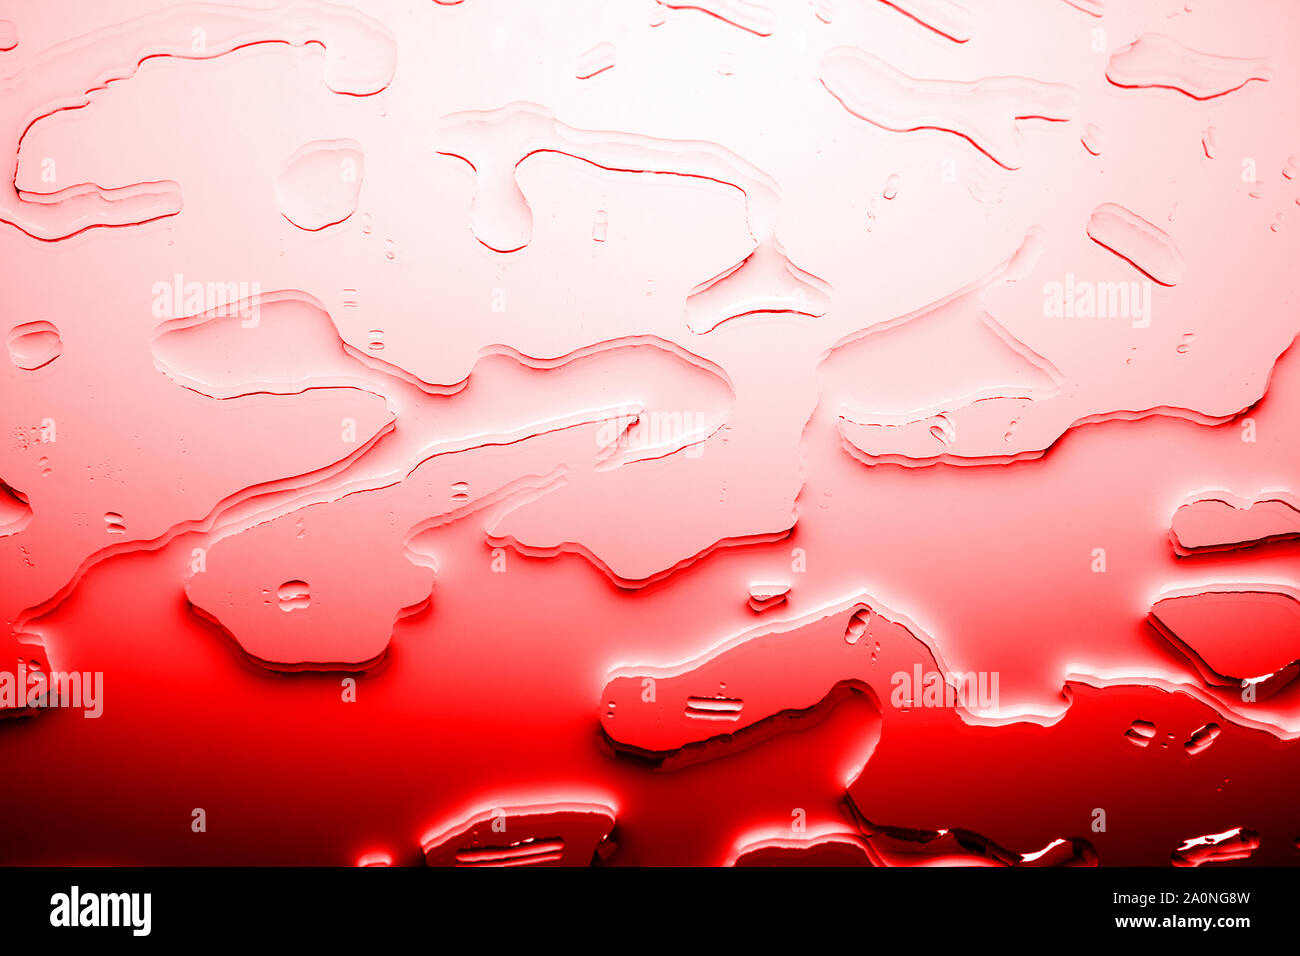 Rosso brillante background testurizzato, fuoriuscito colore sanguinosa di gocce di acqua o liquido rosso illustrazione astratta, Blot pattern close up macro Foto Stock